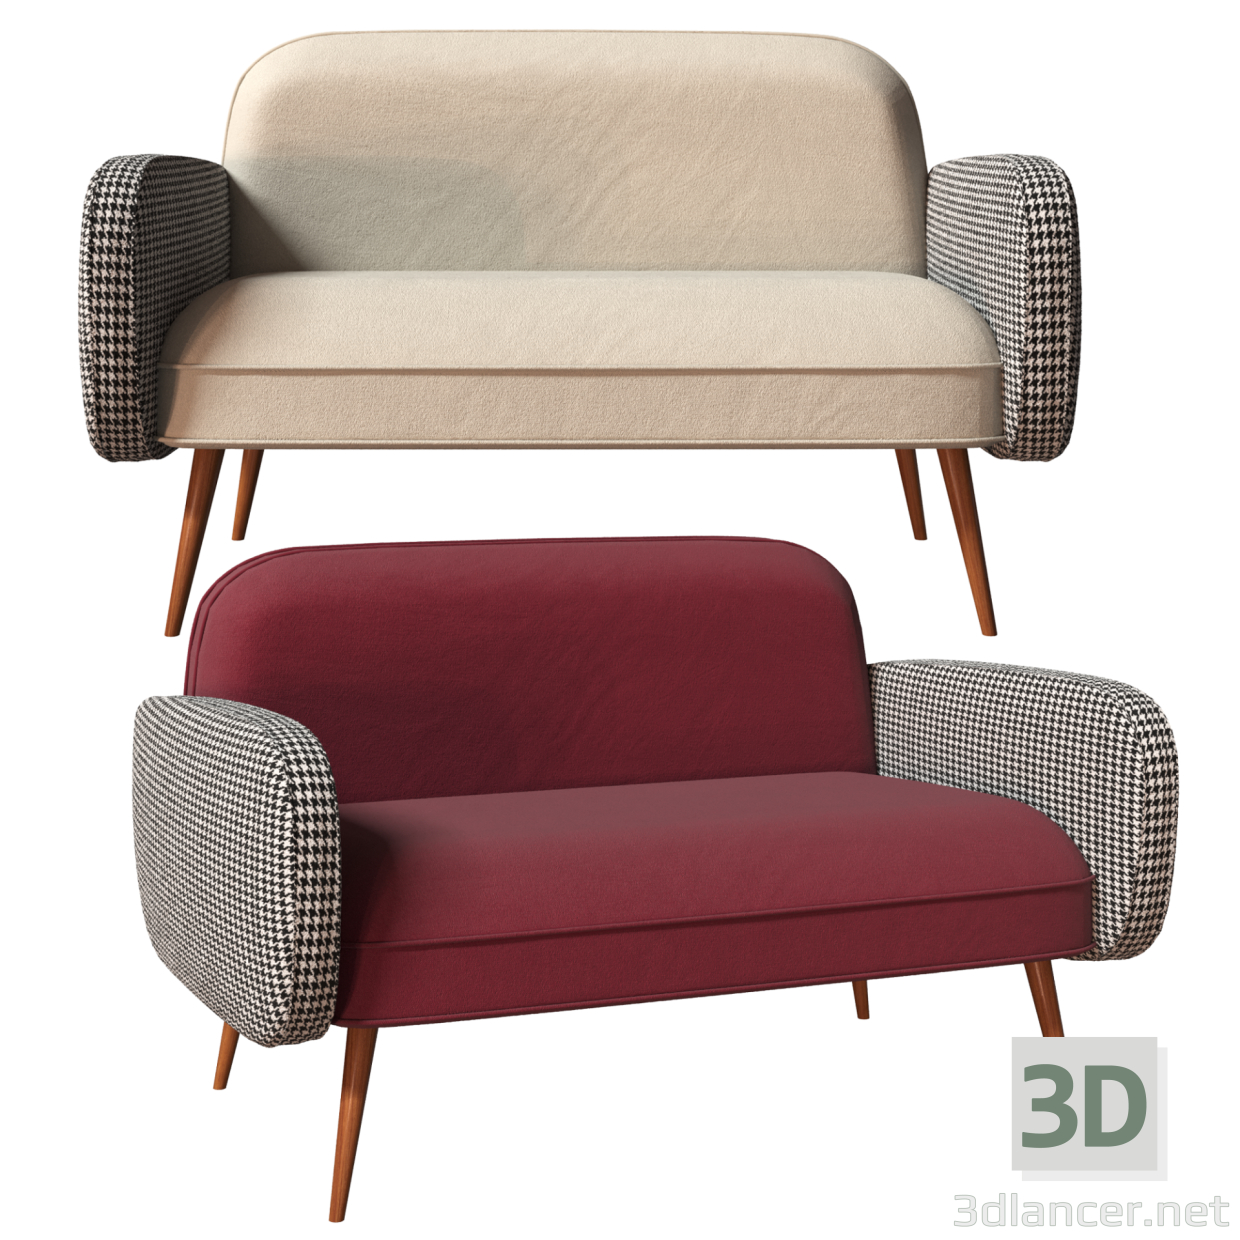 3d Sofa Bordo - OGOGO model buy - render